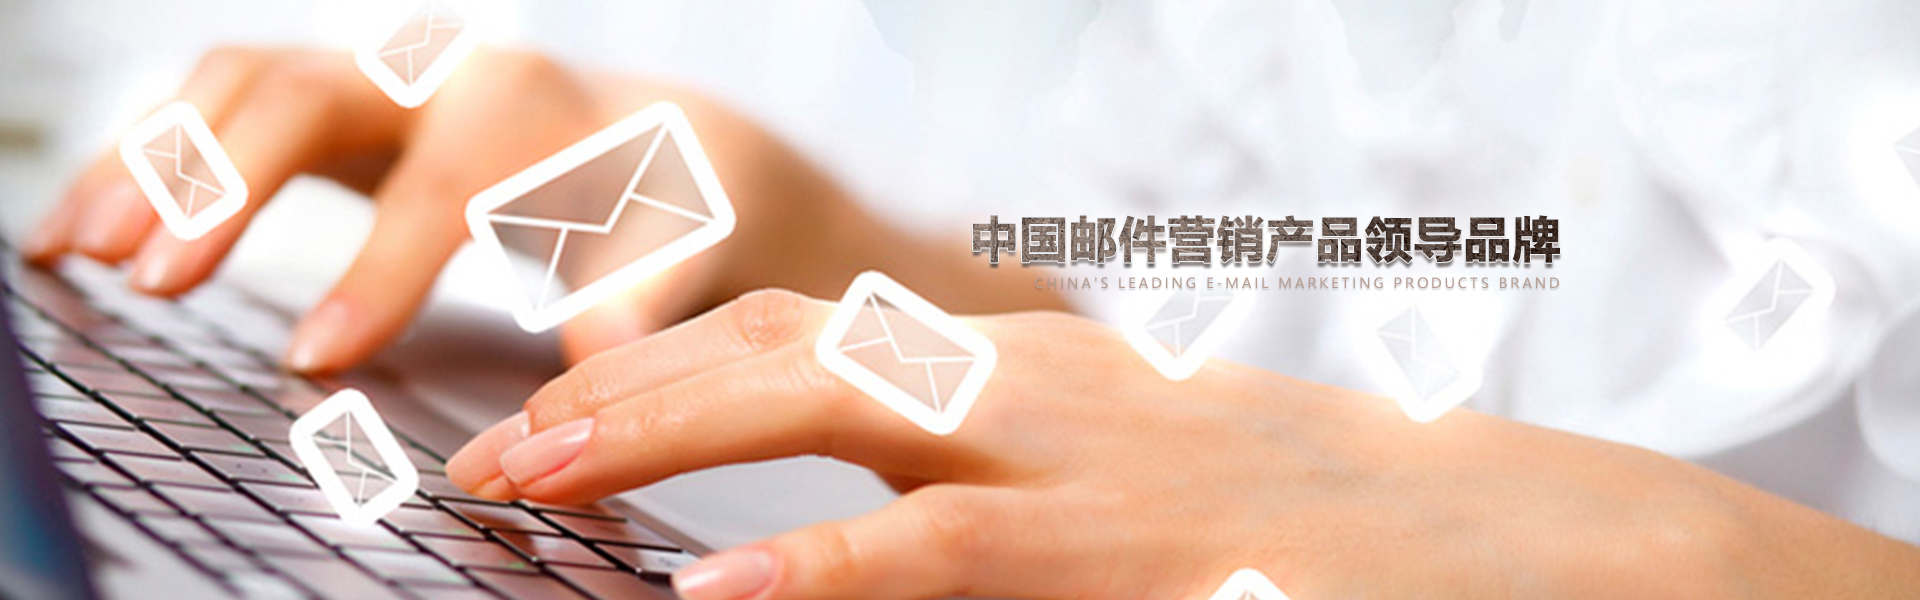 杭州电子邮箱营销软件